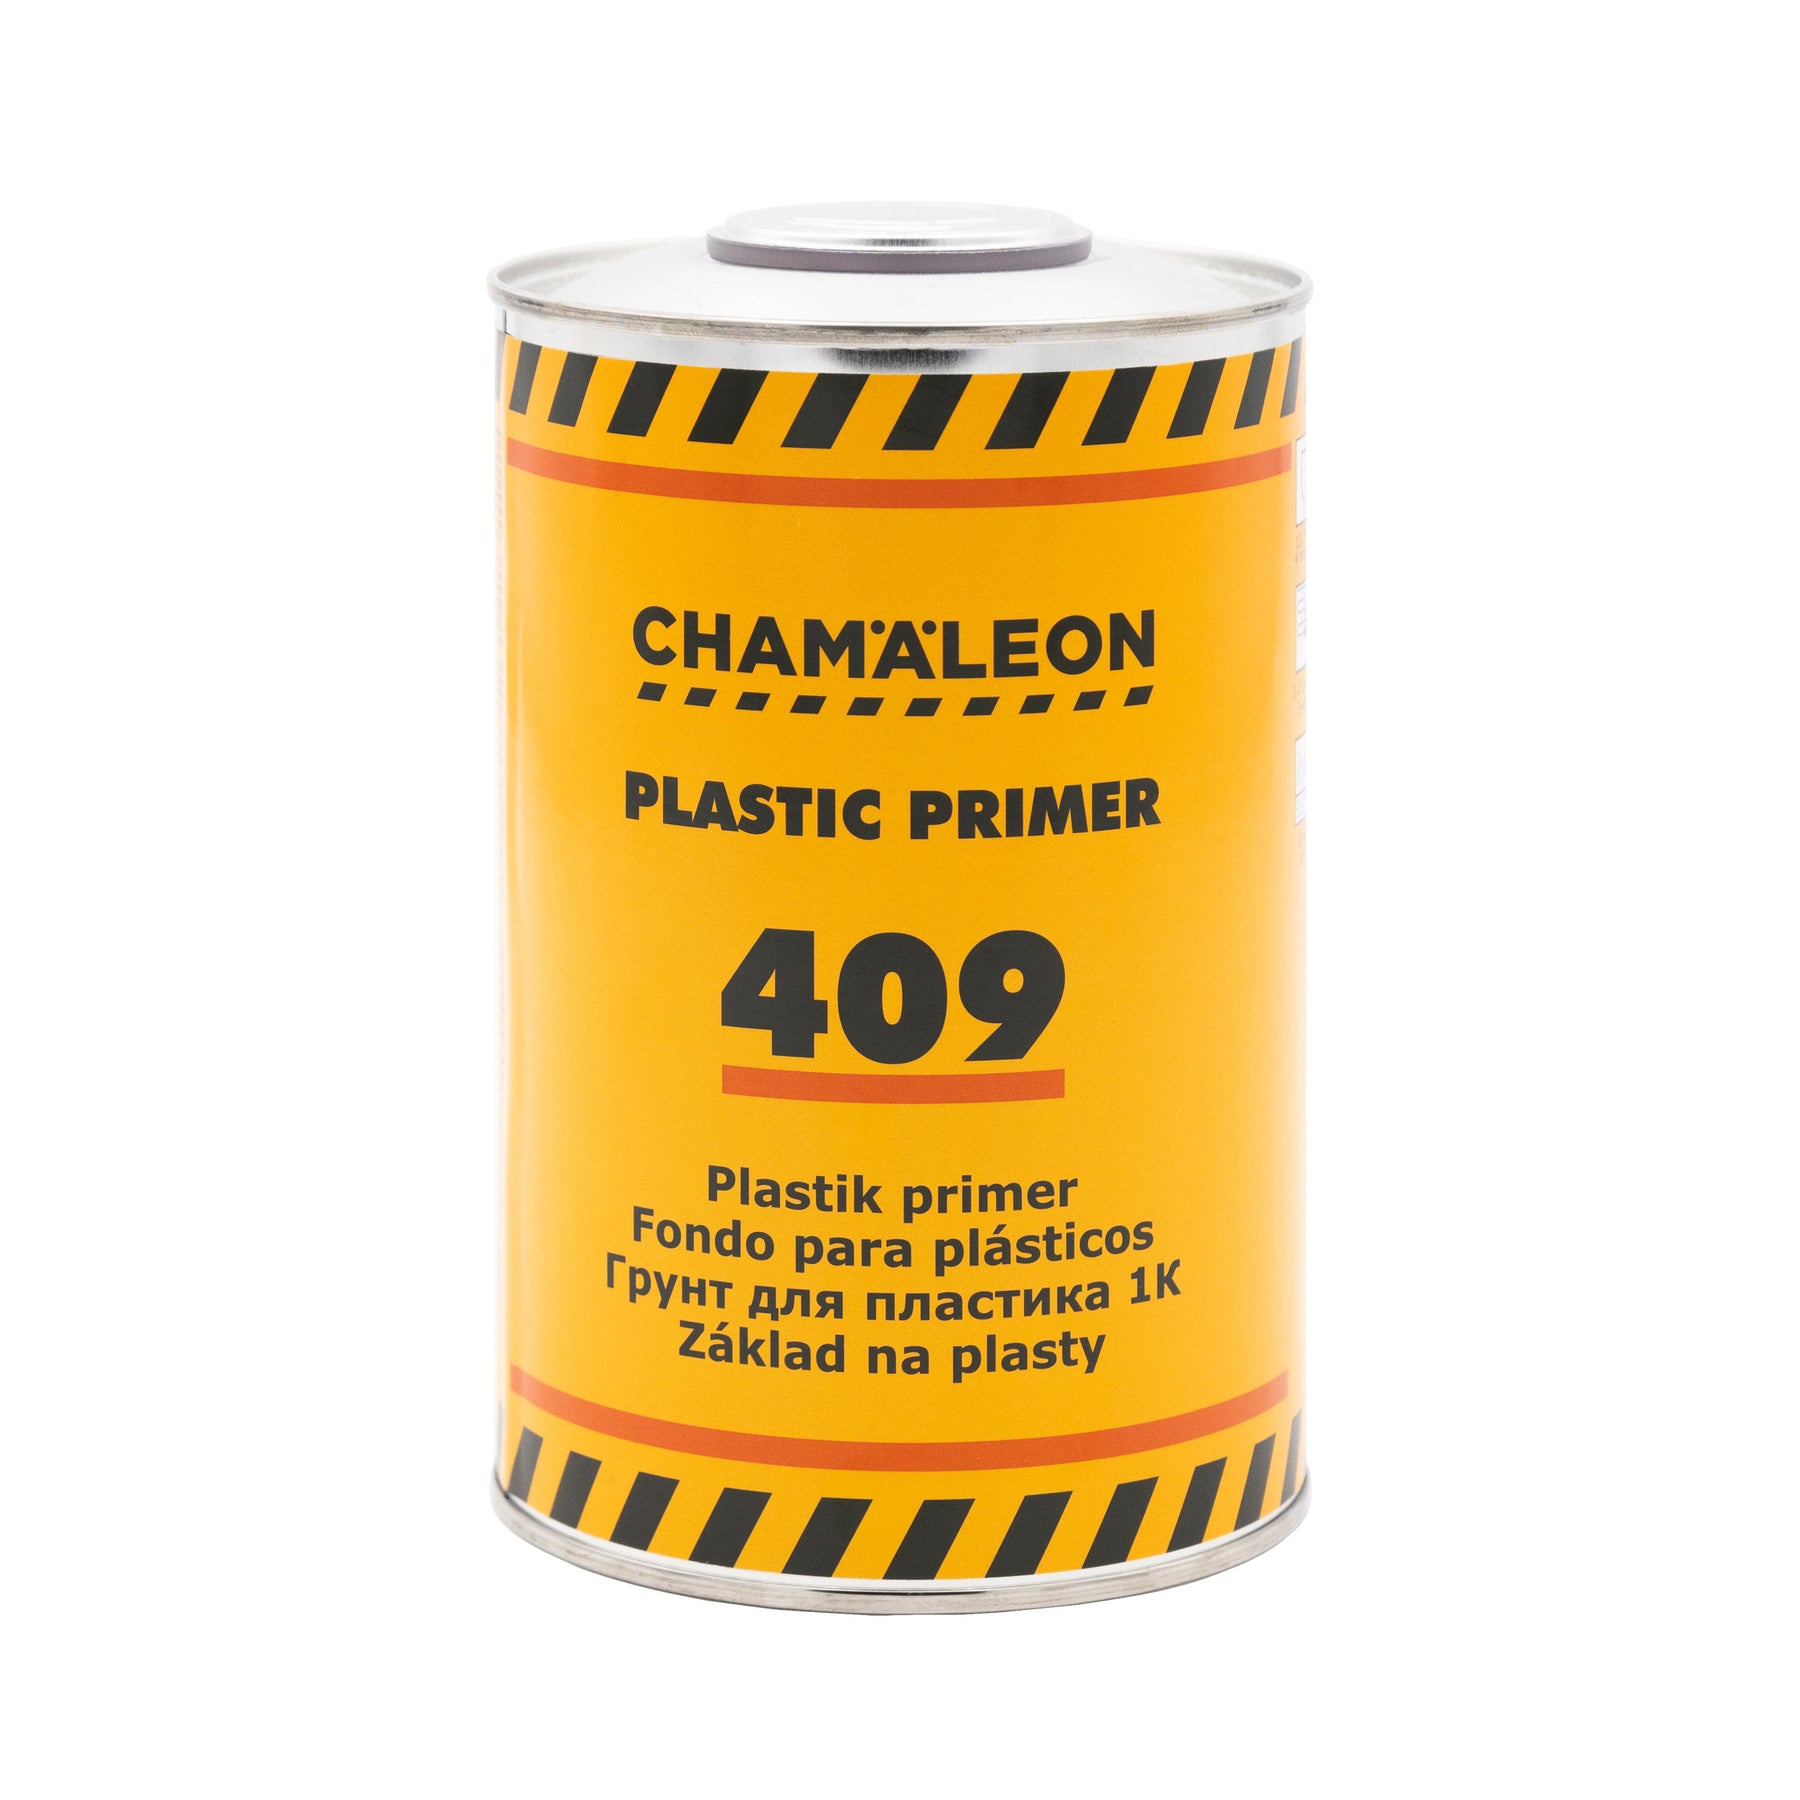 CHAMALEON 1K Plastic Primer 409